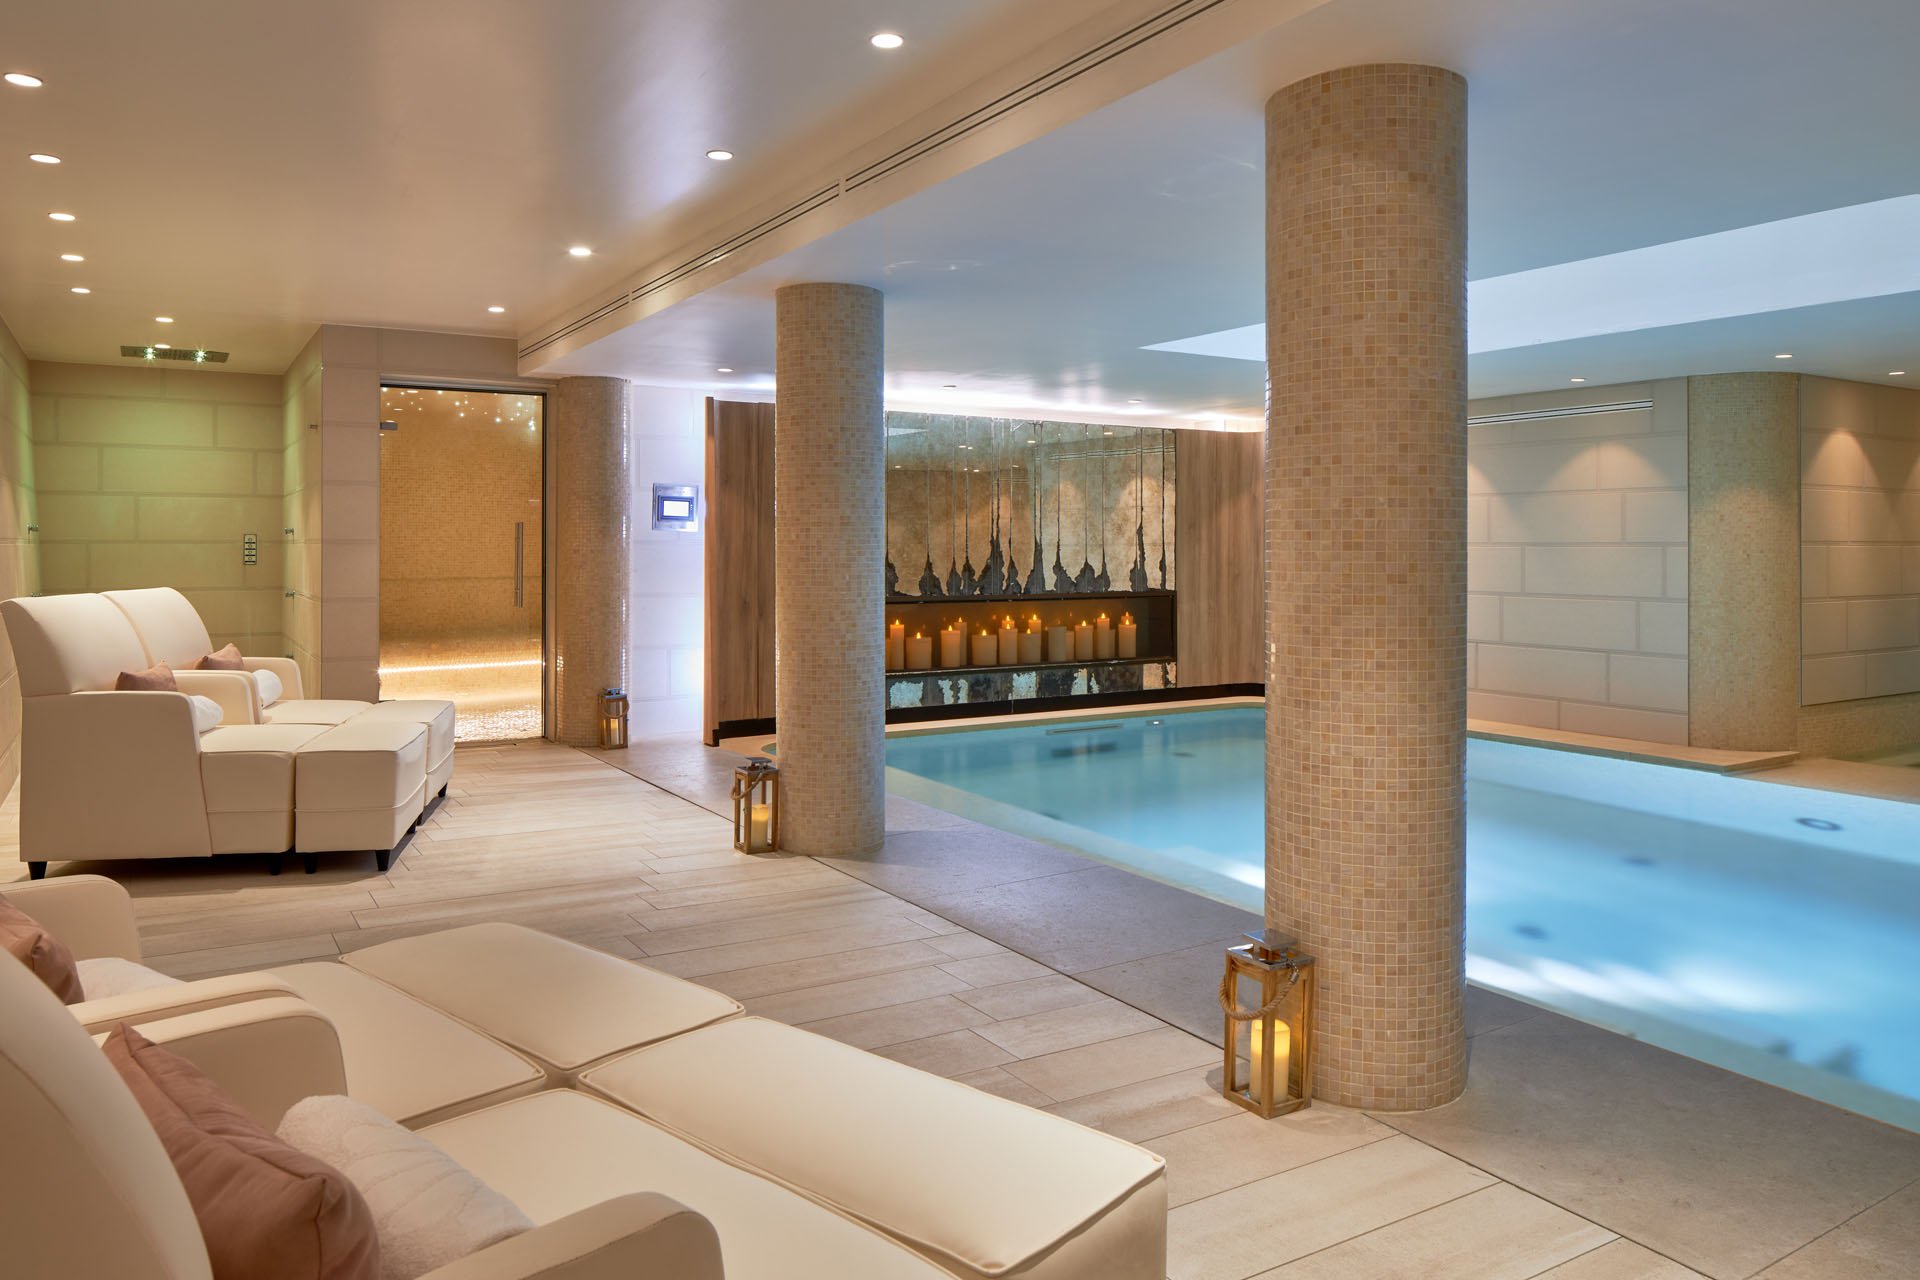 Maison Albar Hotels Le Pont-Neuf piscine intérieure Spa Pont-Neuf by Cinq Mondes